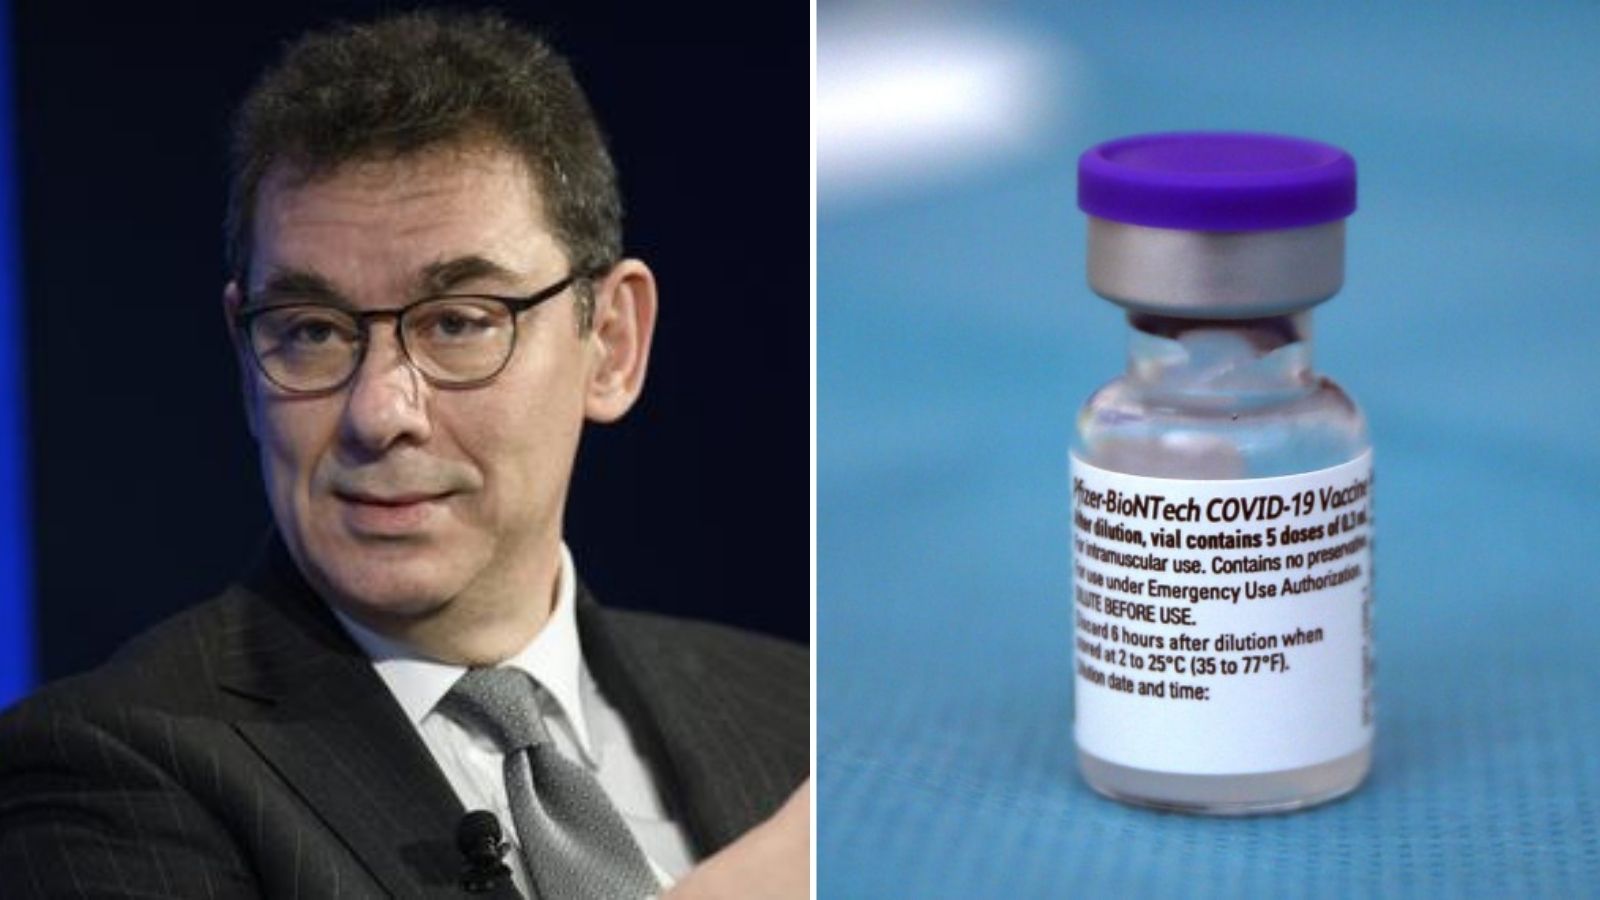 Albert Bourla vacunación regreso a normalidad en 2022 Pfizer